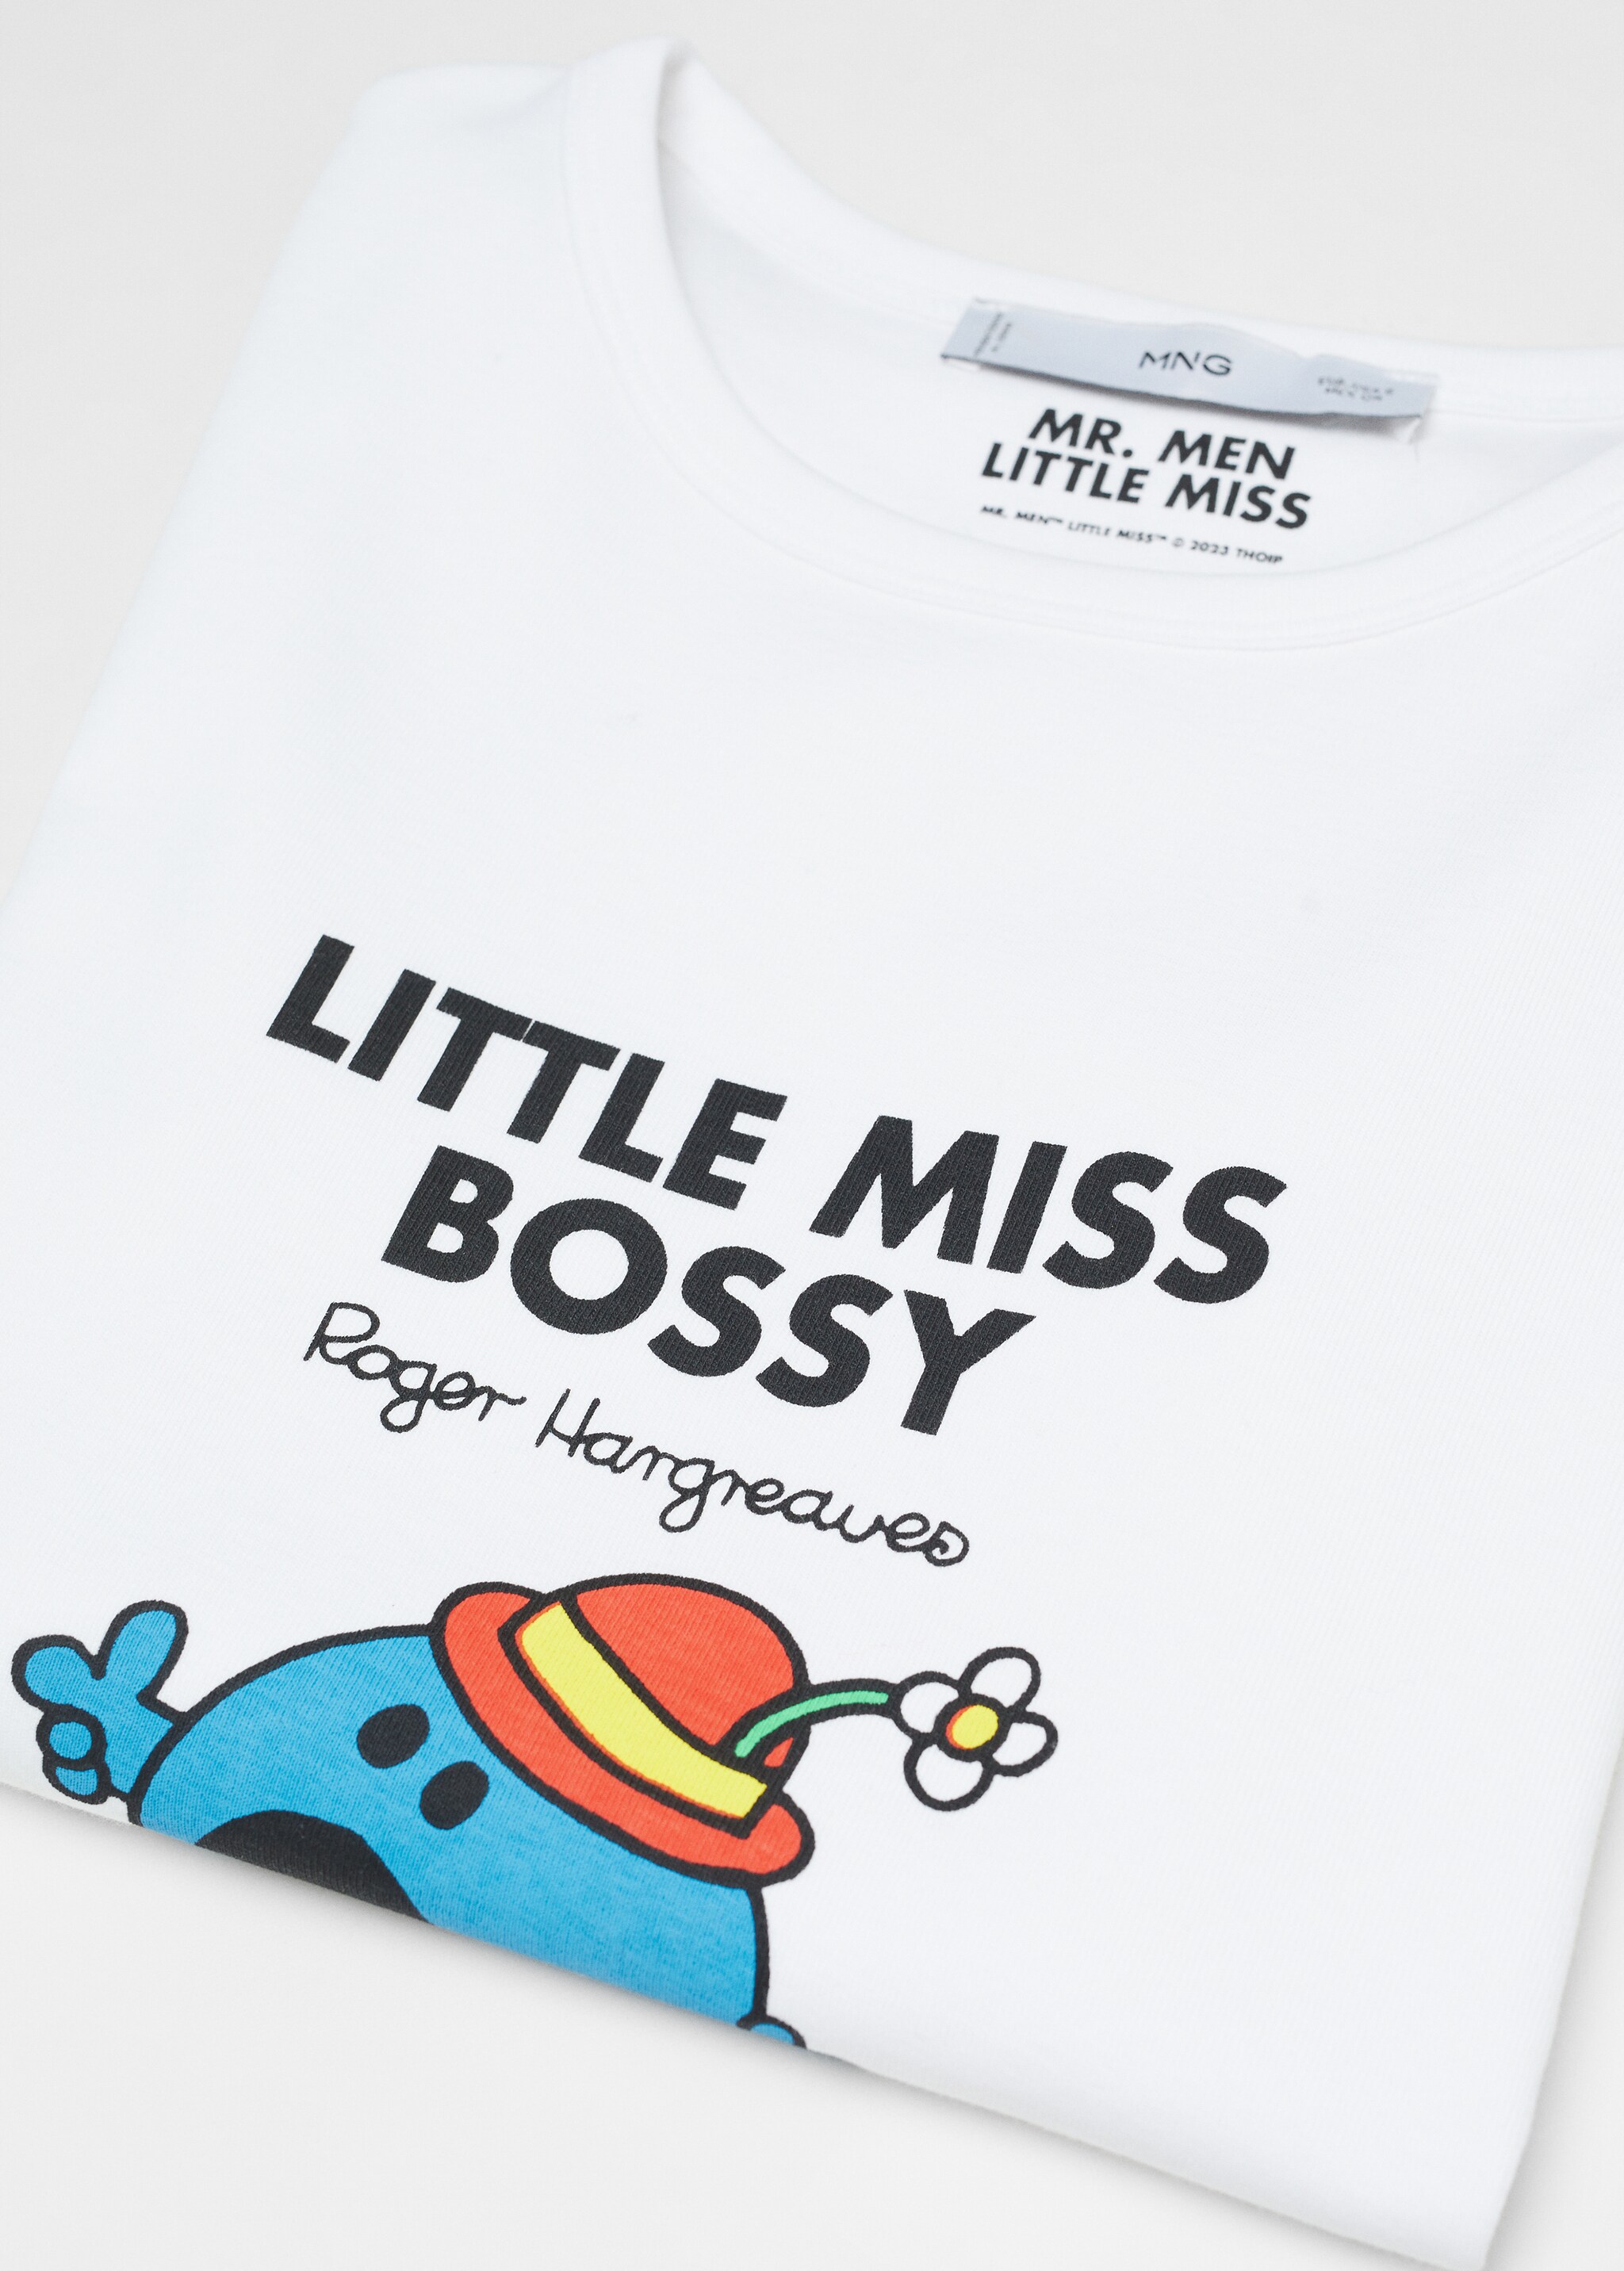 Maglietta Mr. Men and Little Miss - Dettaglio dell'articolo 8